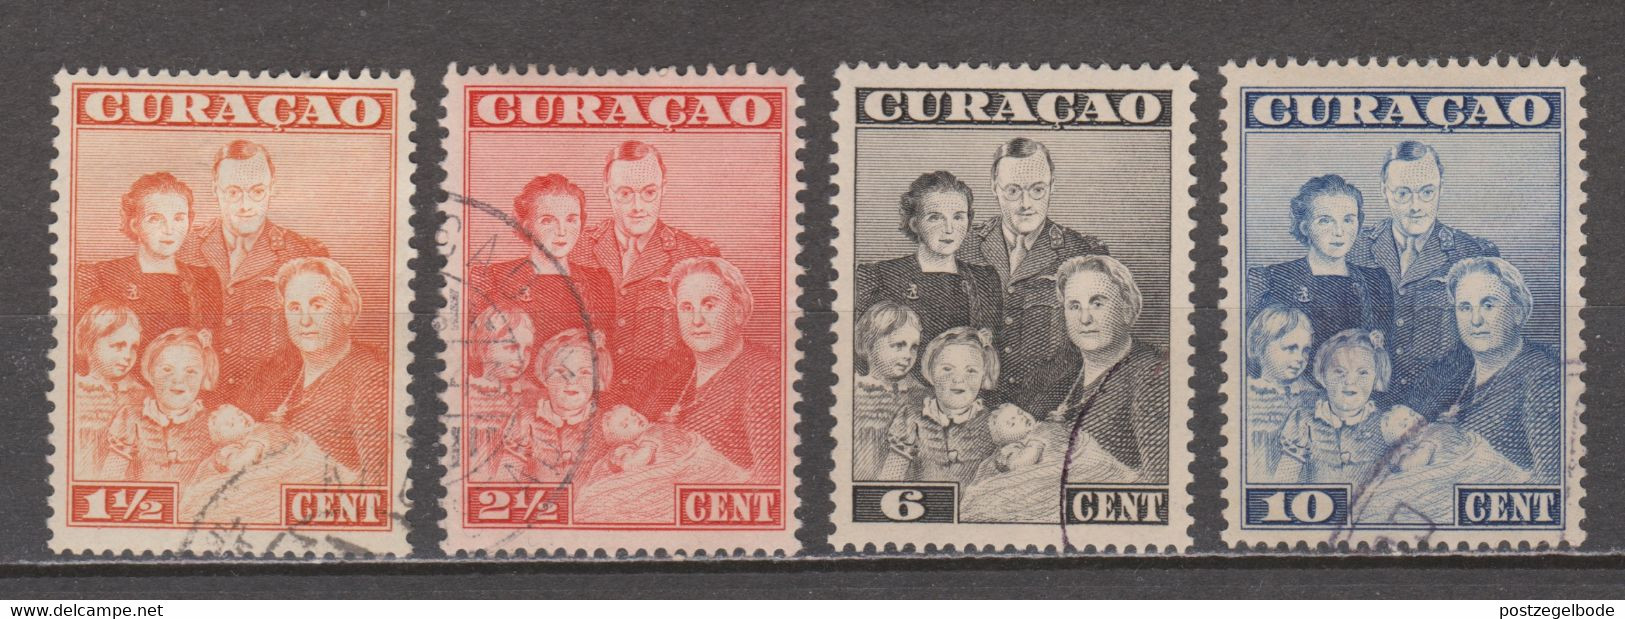 Nederlandse Antillen Curacao 164 165 166 167 Used Nederlandse Koninklijke Familie Royal Family Famille Royal 1943 - Curaçao, Nederlandse Antillen, Aruba